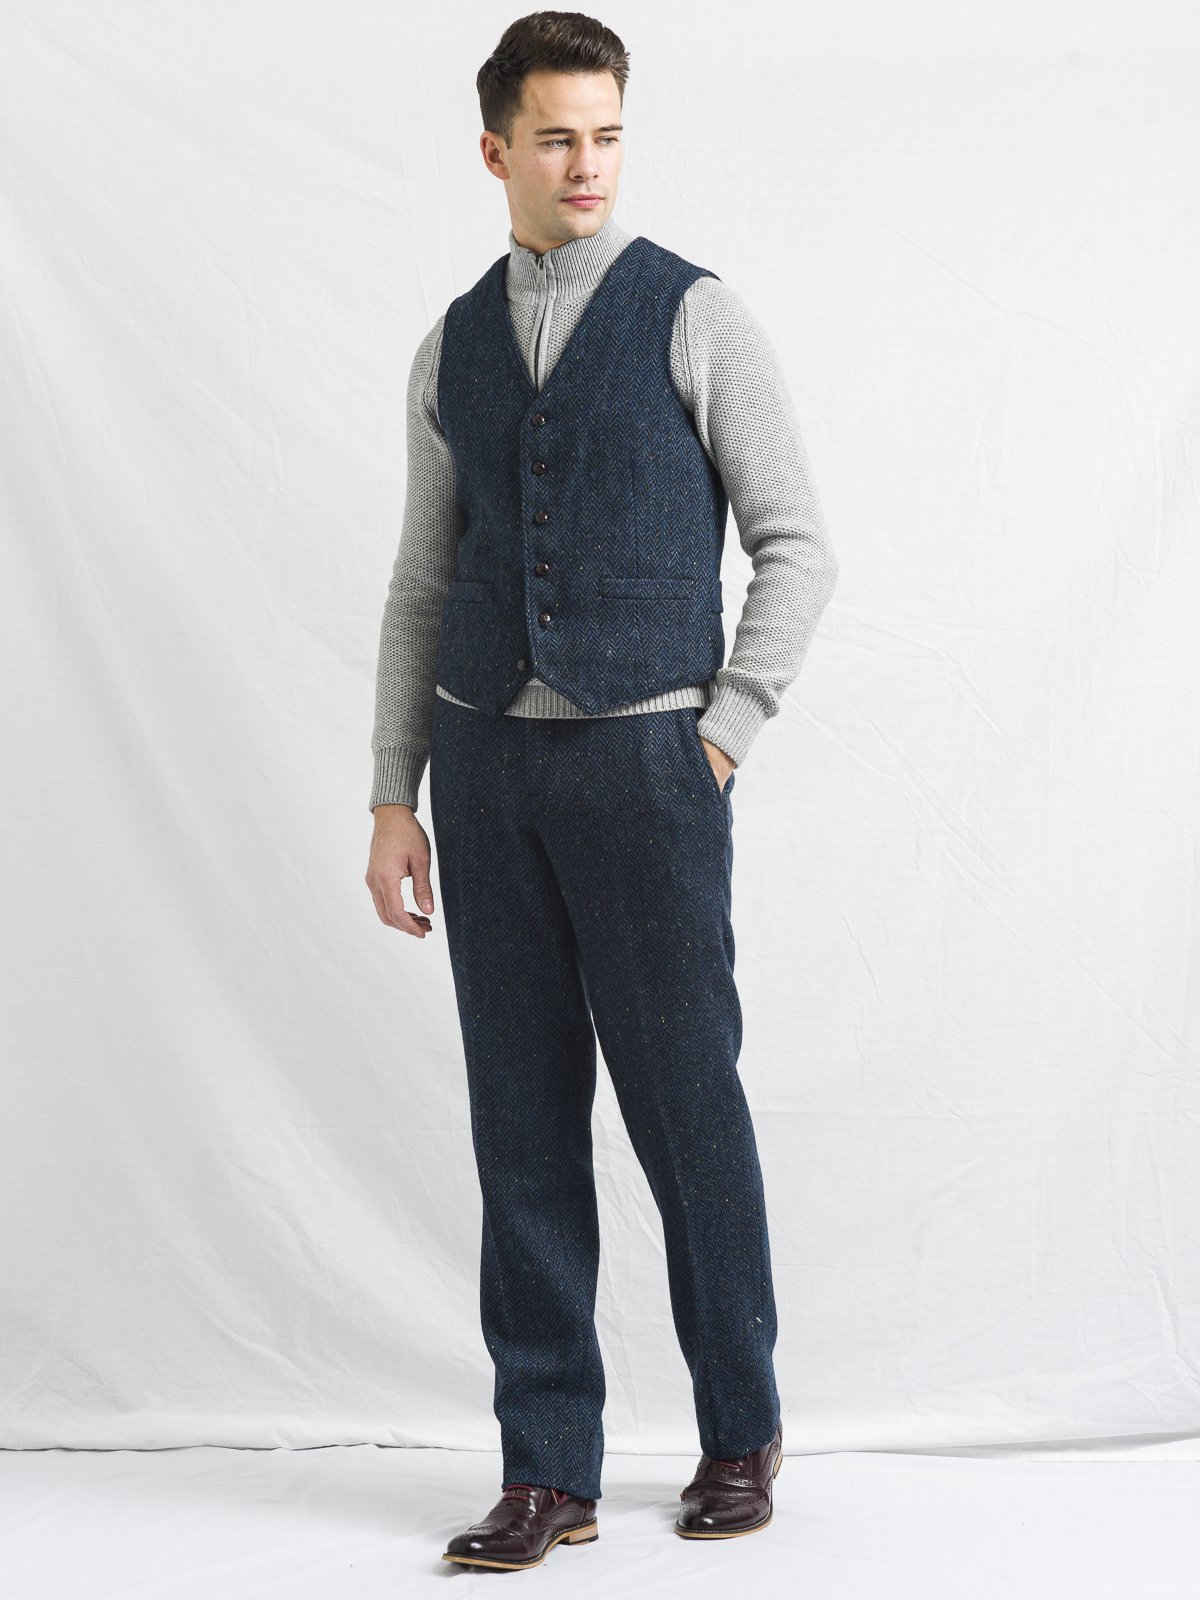 WB Yeats Blue Herringbone Tweed Vest